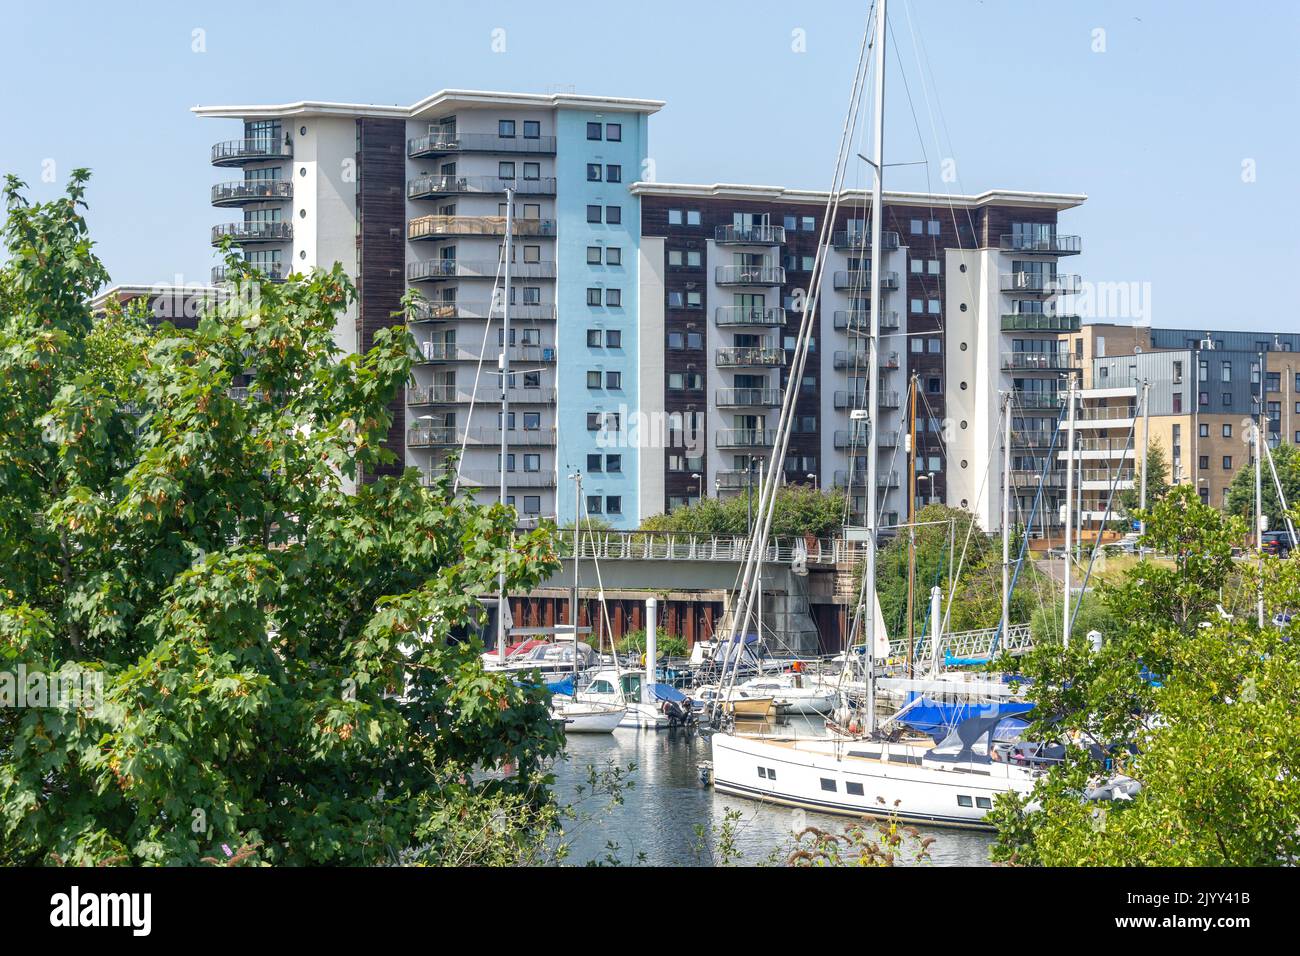 Appartamenti e barche a Cardiff Marina, Città di Cardiff (Caerdydd), Galles (Cymru), Regno Unito Foto Stock